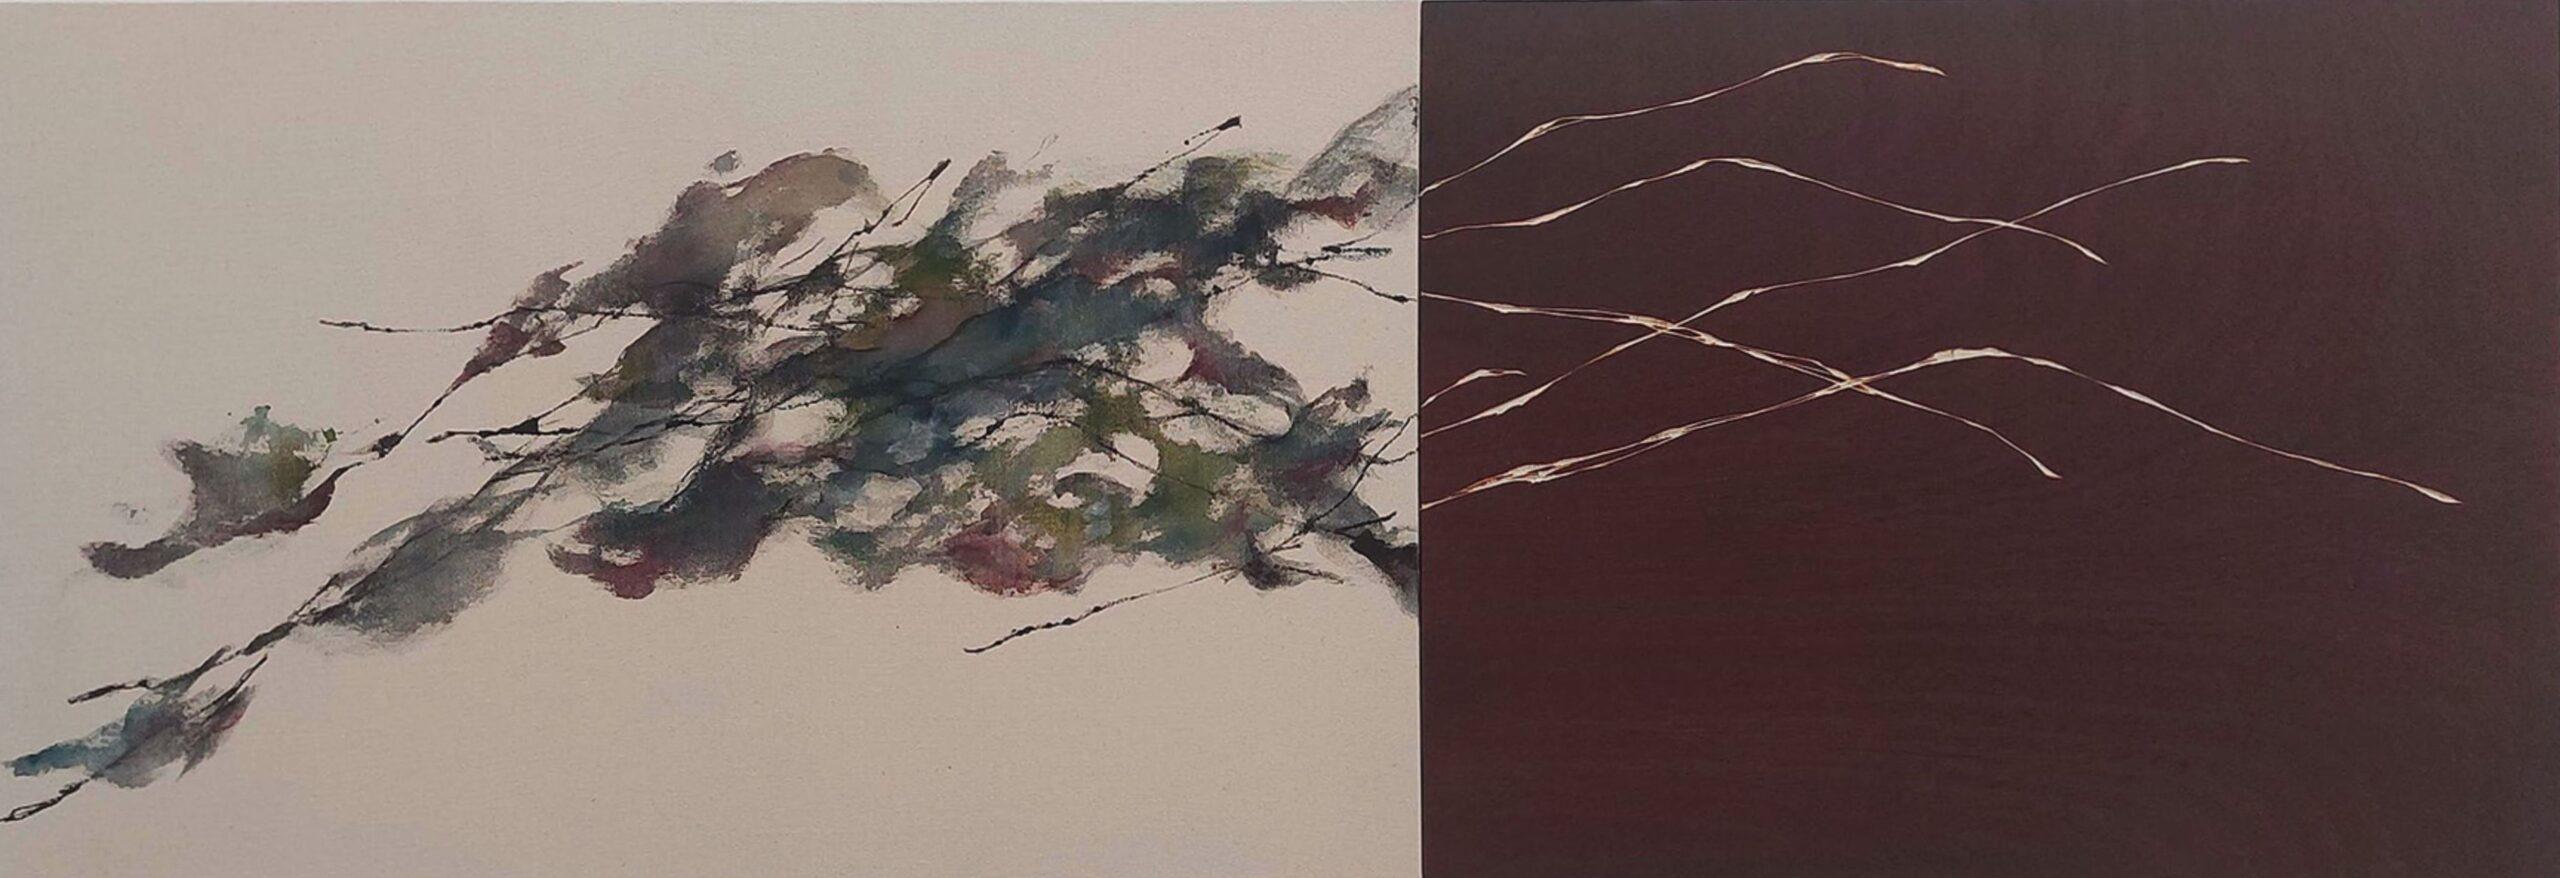 Flowing Sound #10 von Maho Maeda - Abstraktes Gemälde, blaue Blumen, Holz, Leinwand